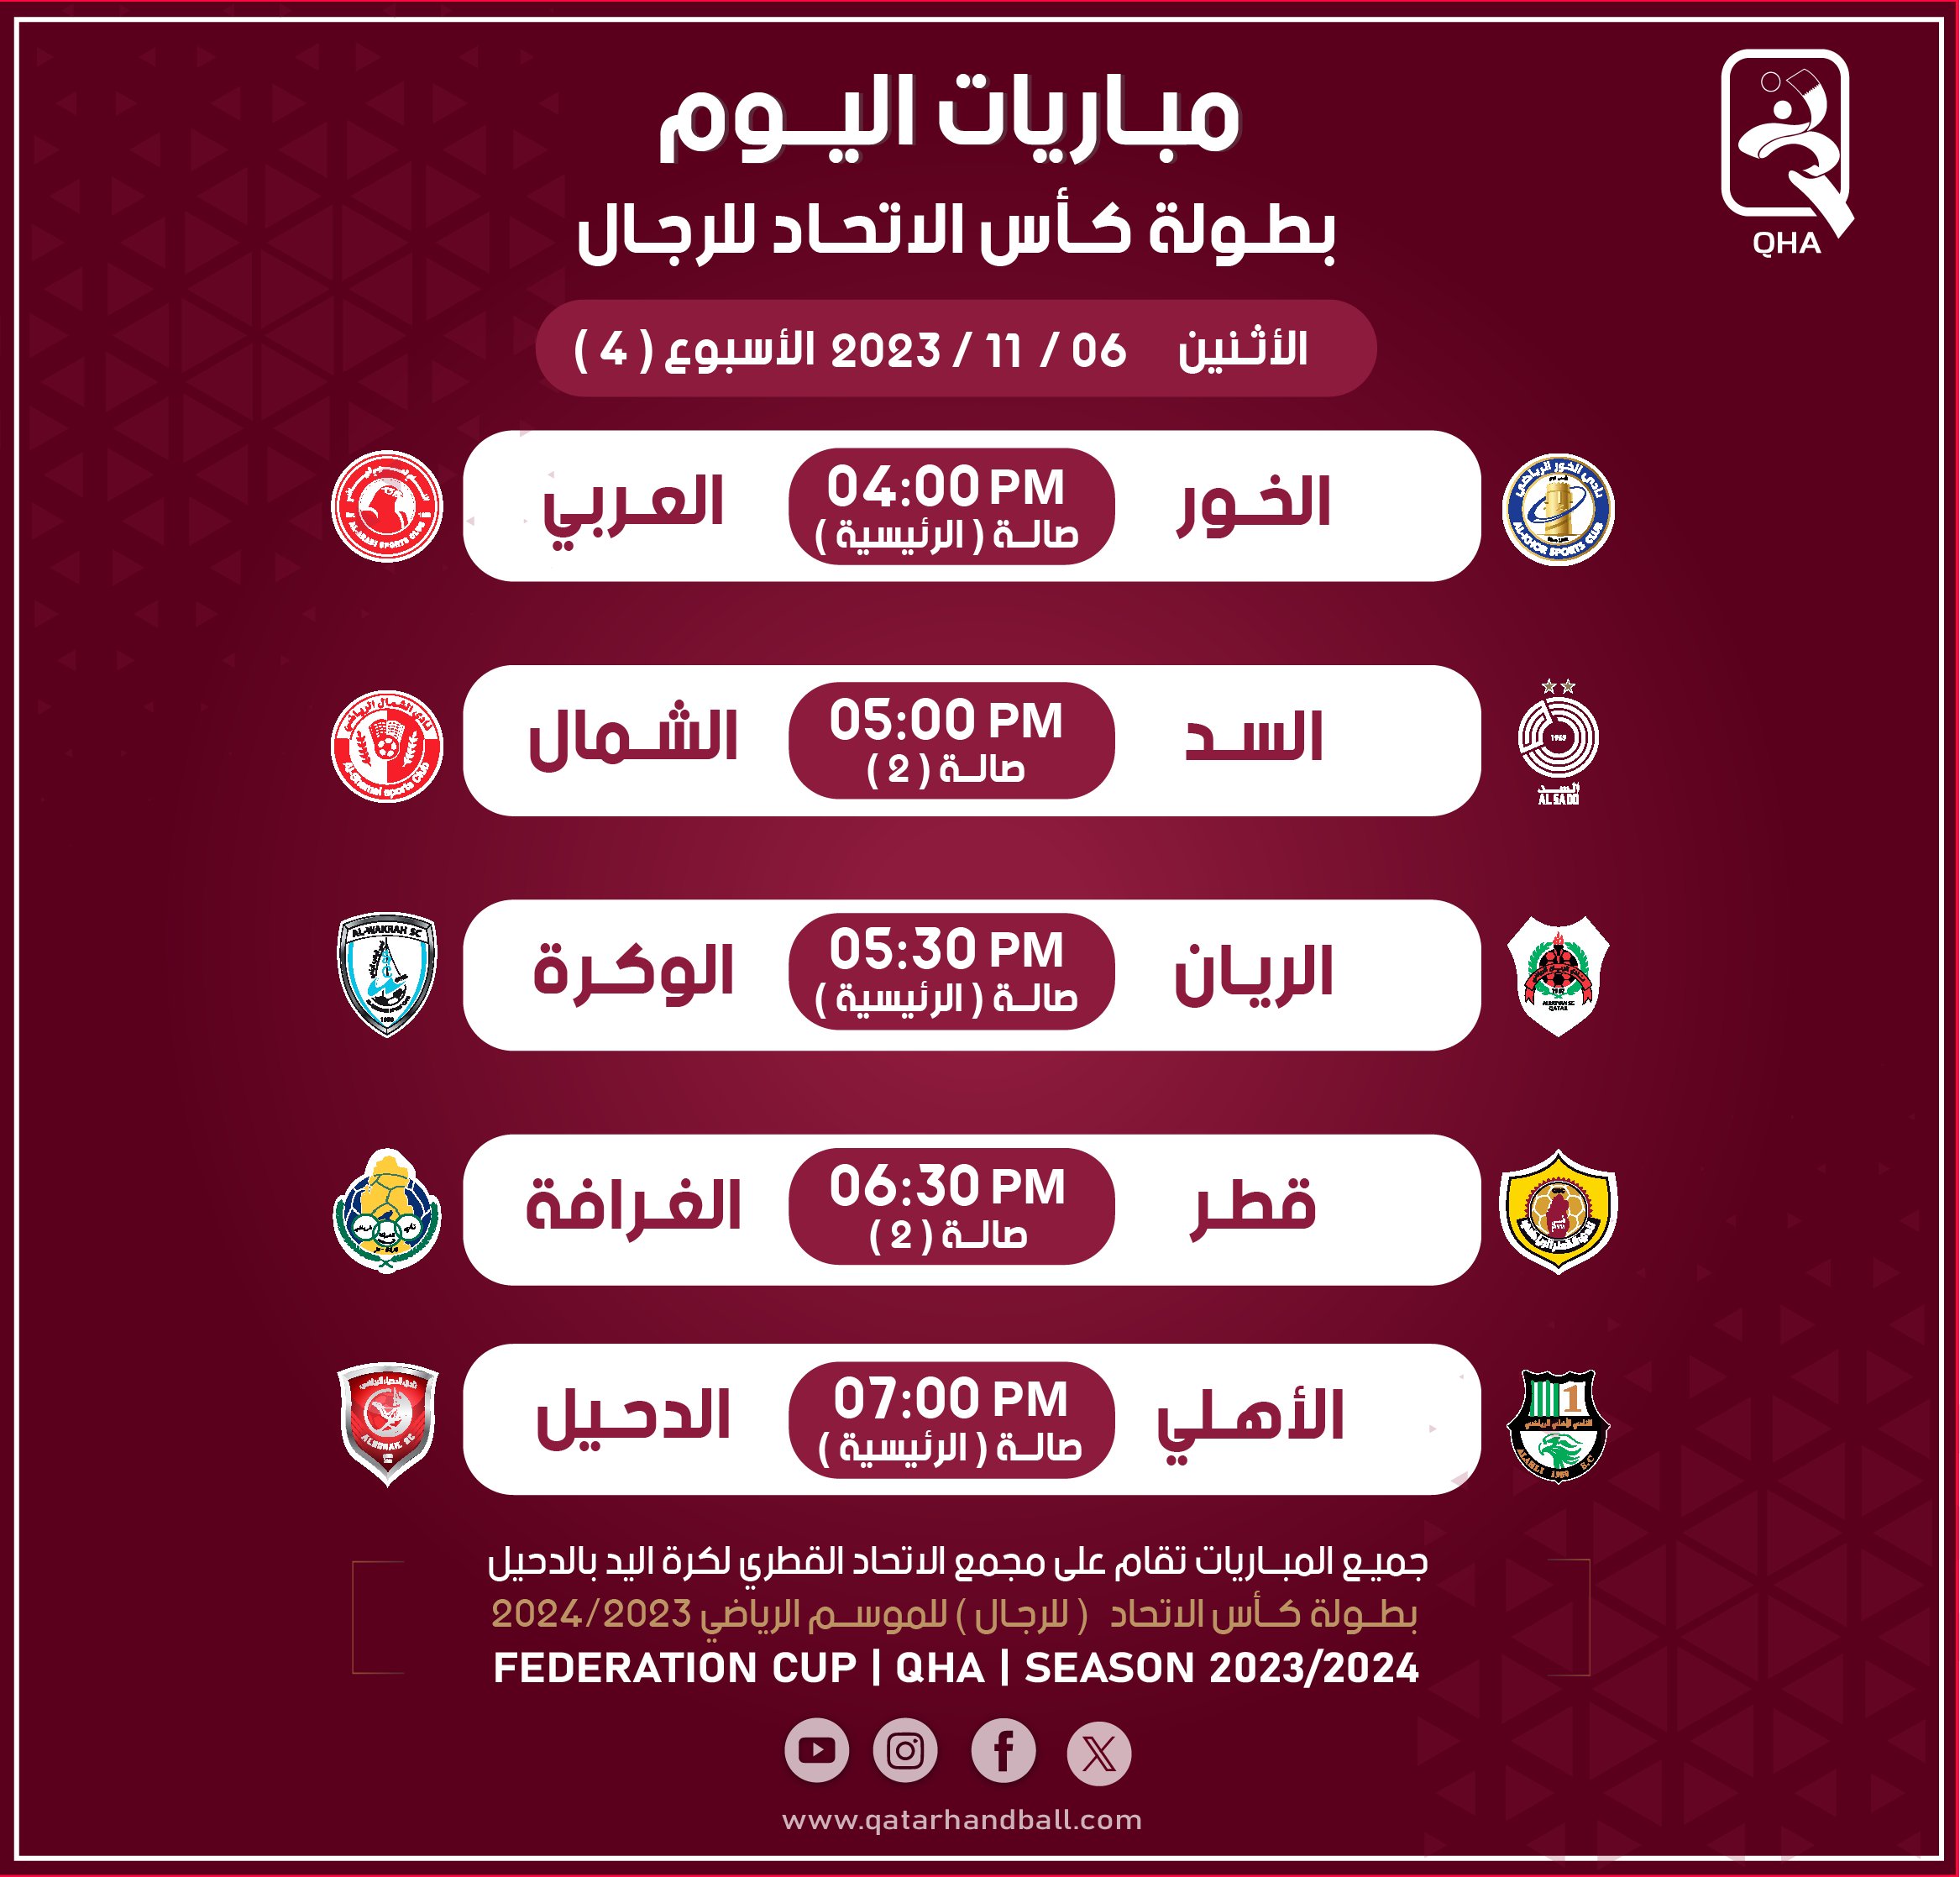 Qatar Handball Association (@Qatarhandball) / X